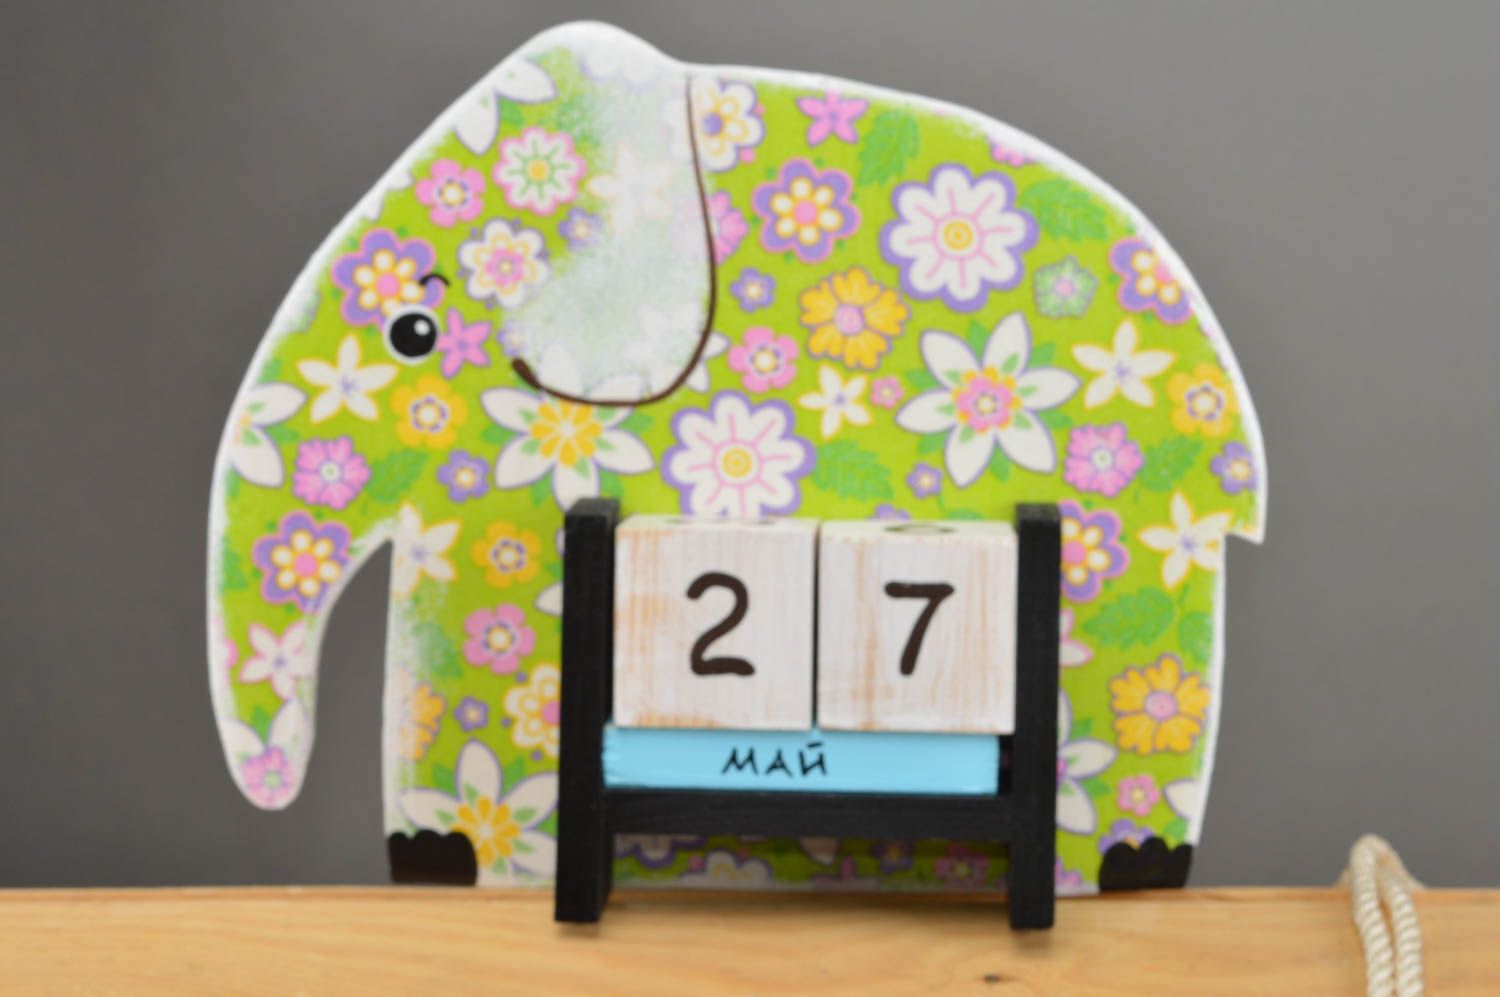 Детский календарь в виде слоника из фанеры декупаж зеленый ручной работы фото 2